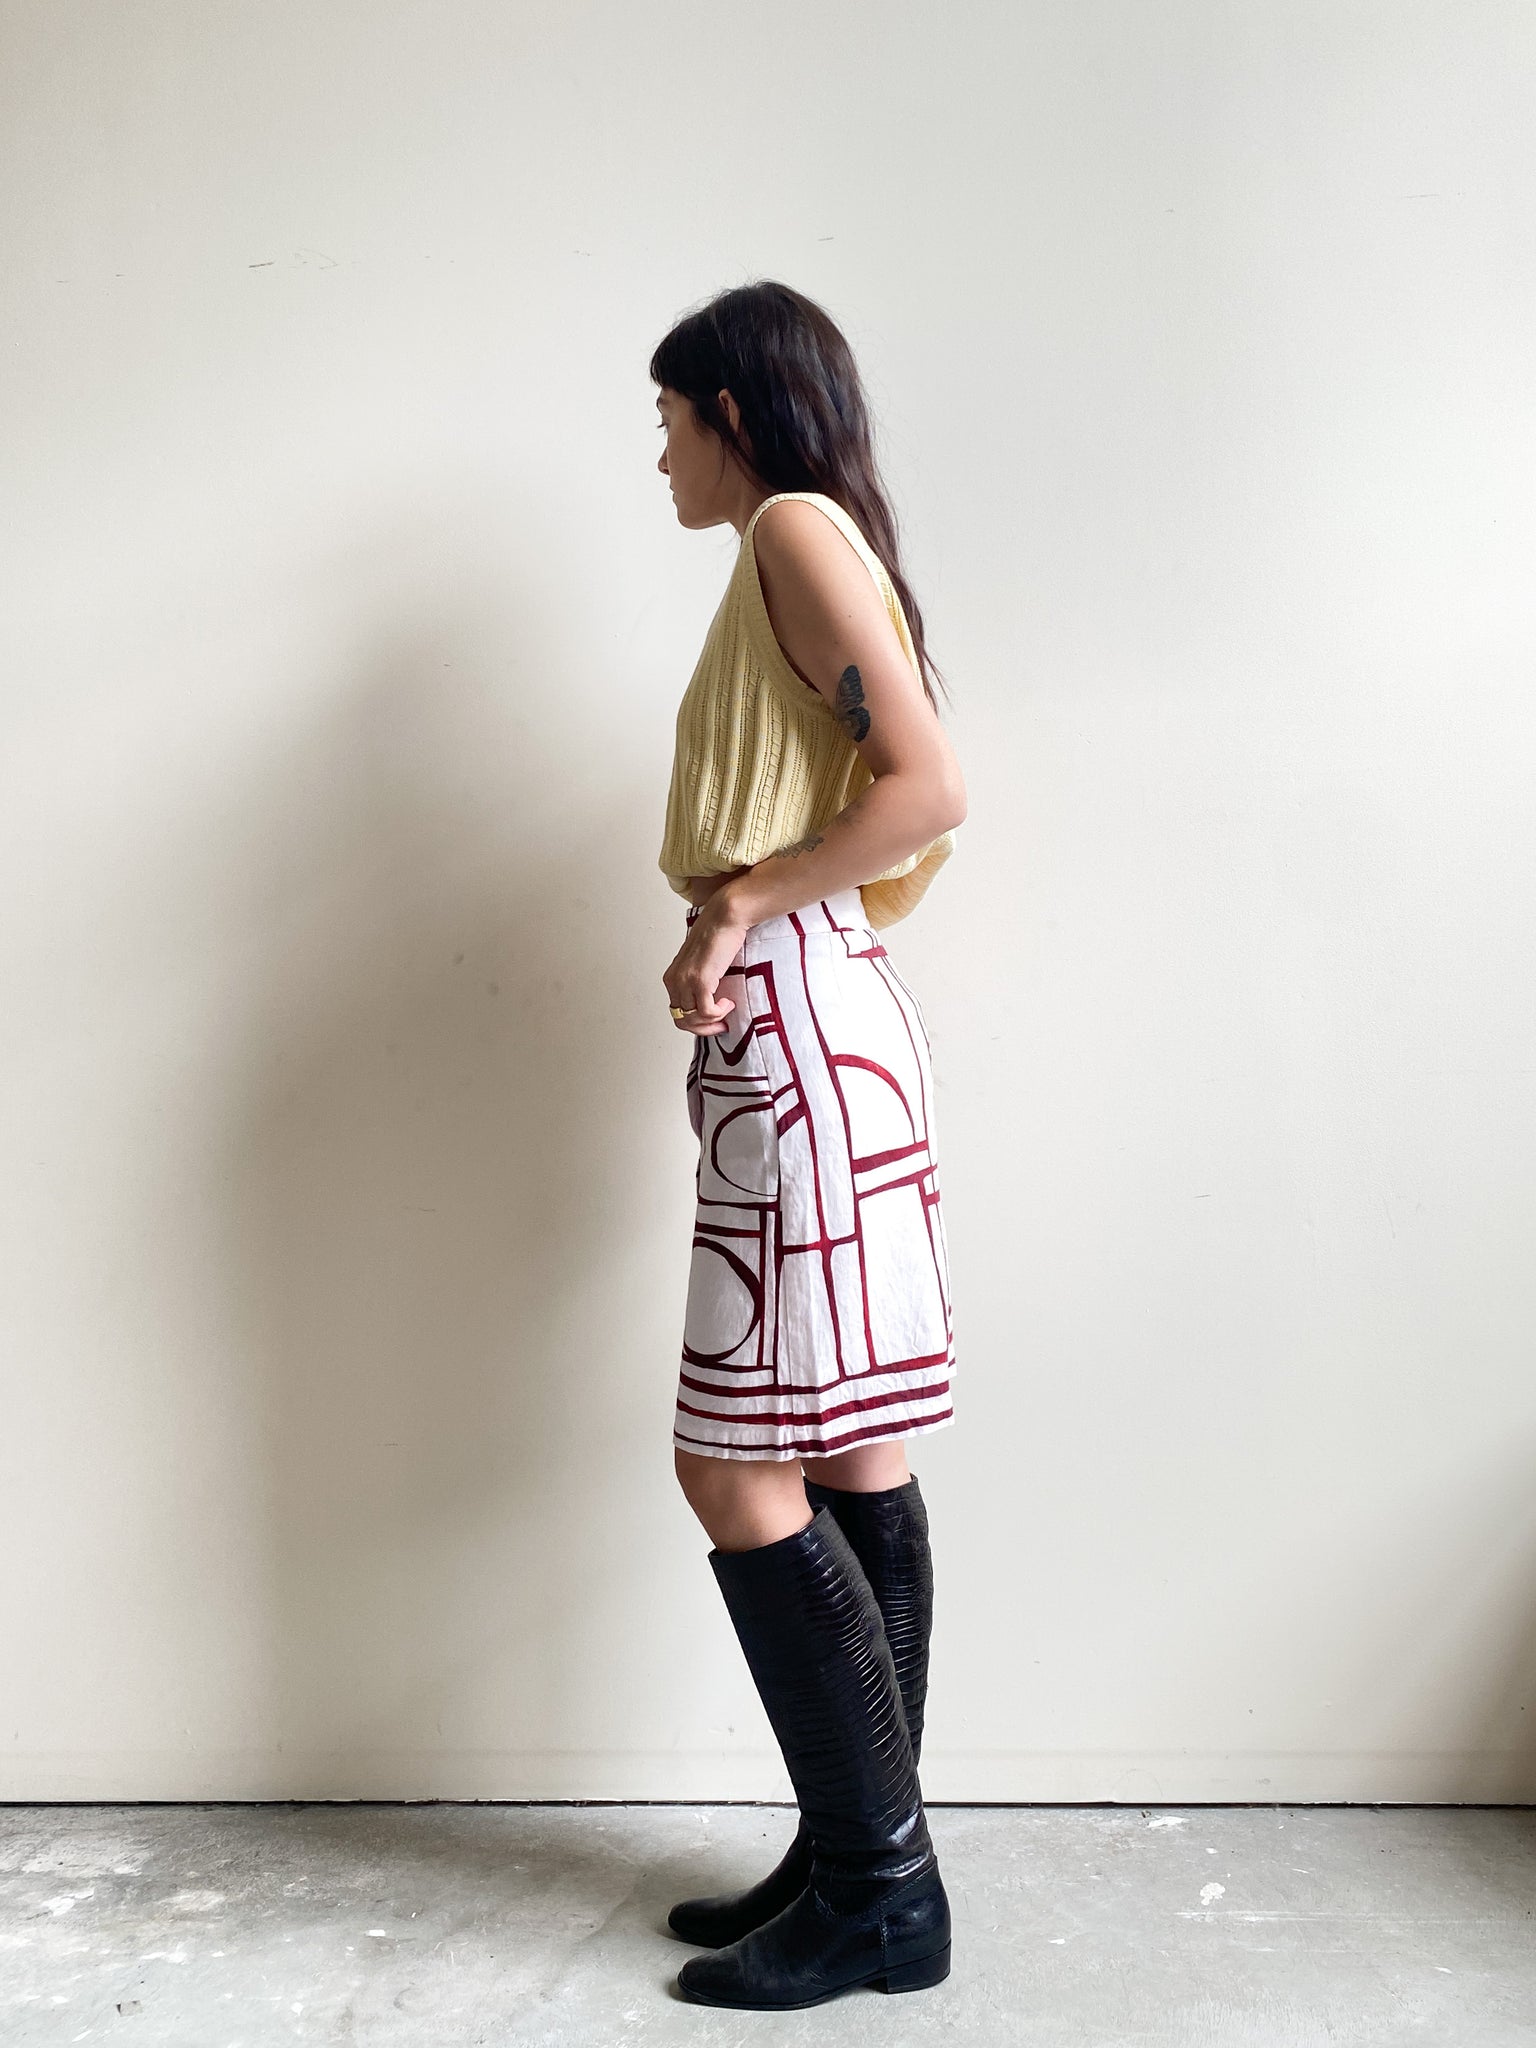 LOFT Linen Blend White and Red Skirt (XS)